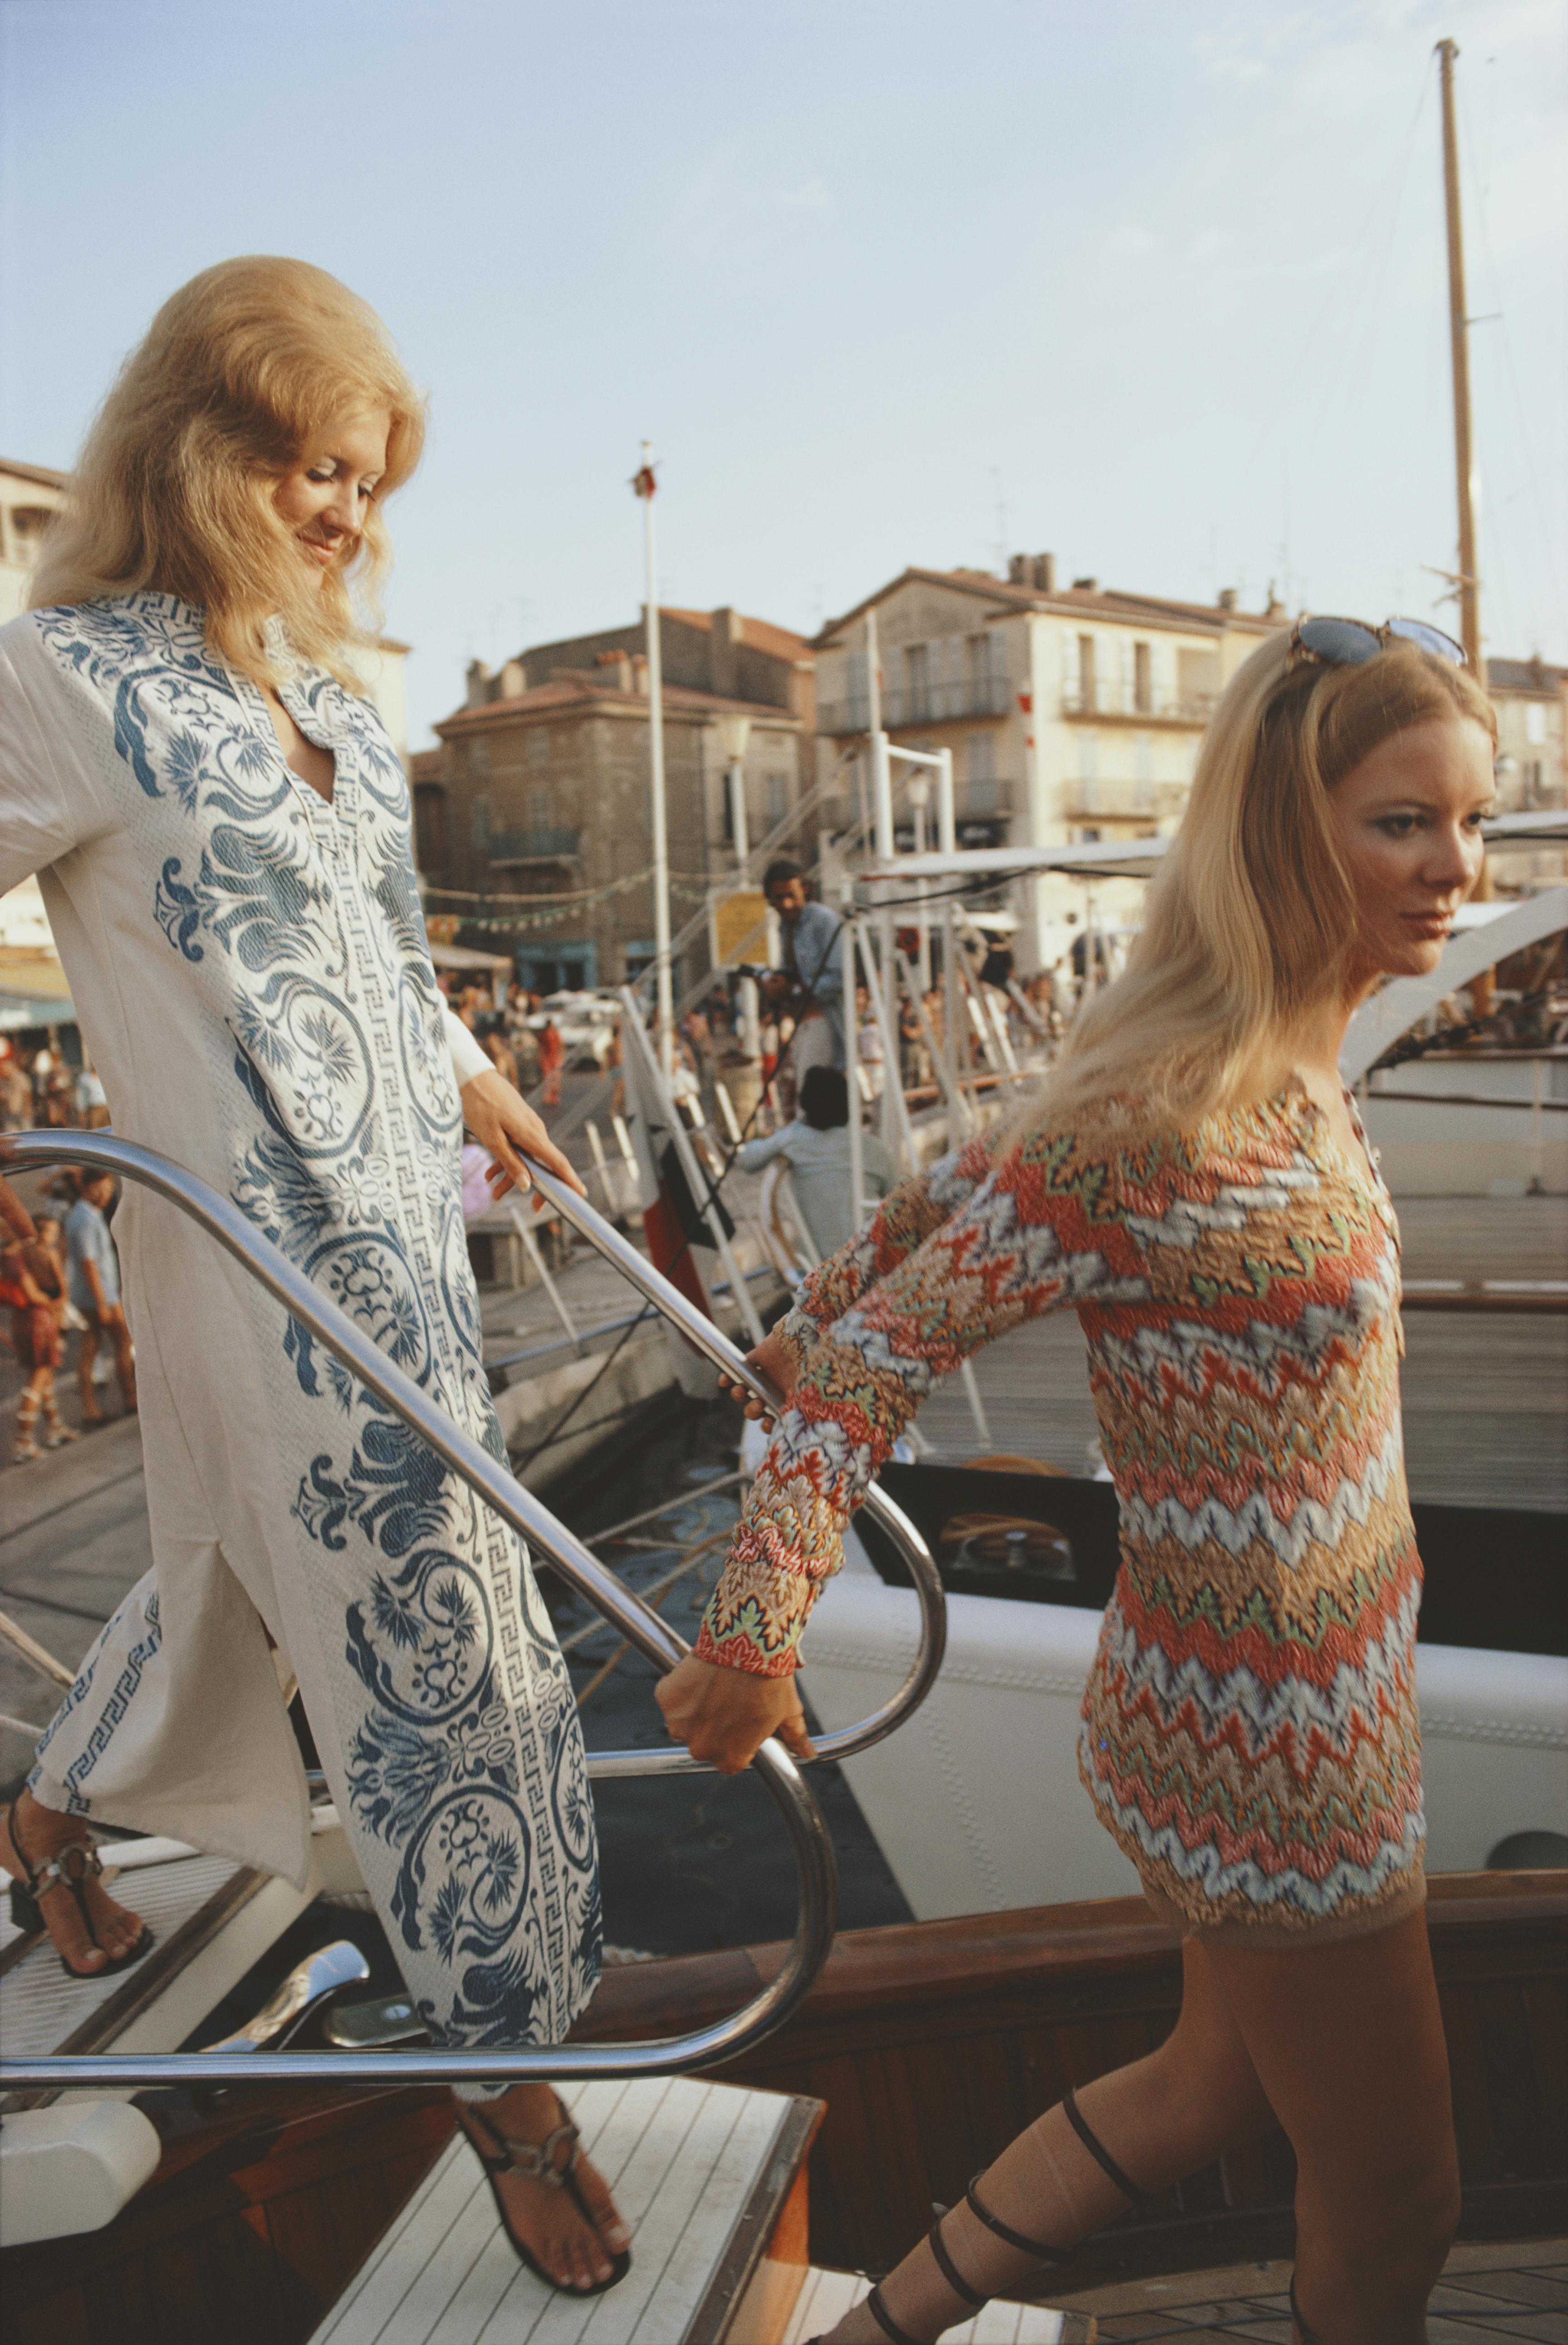 saint-Tropez 1971 Slim Aarons Edition limitée du domaine 

Deux jeunes femmes, l'une portant un caftan, montent sur un yacht sur le front de mer de Saint-Tropez, France, août 1971. 

Produit à partir de la transparence originale
Certificat